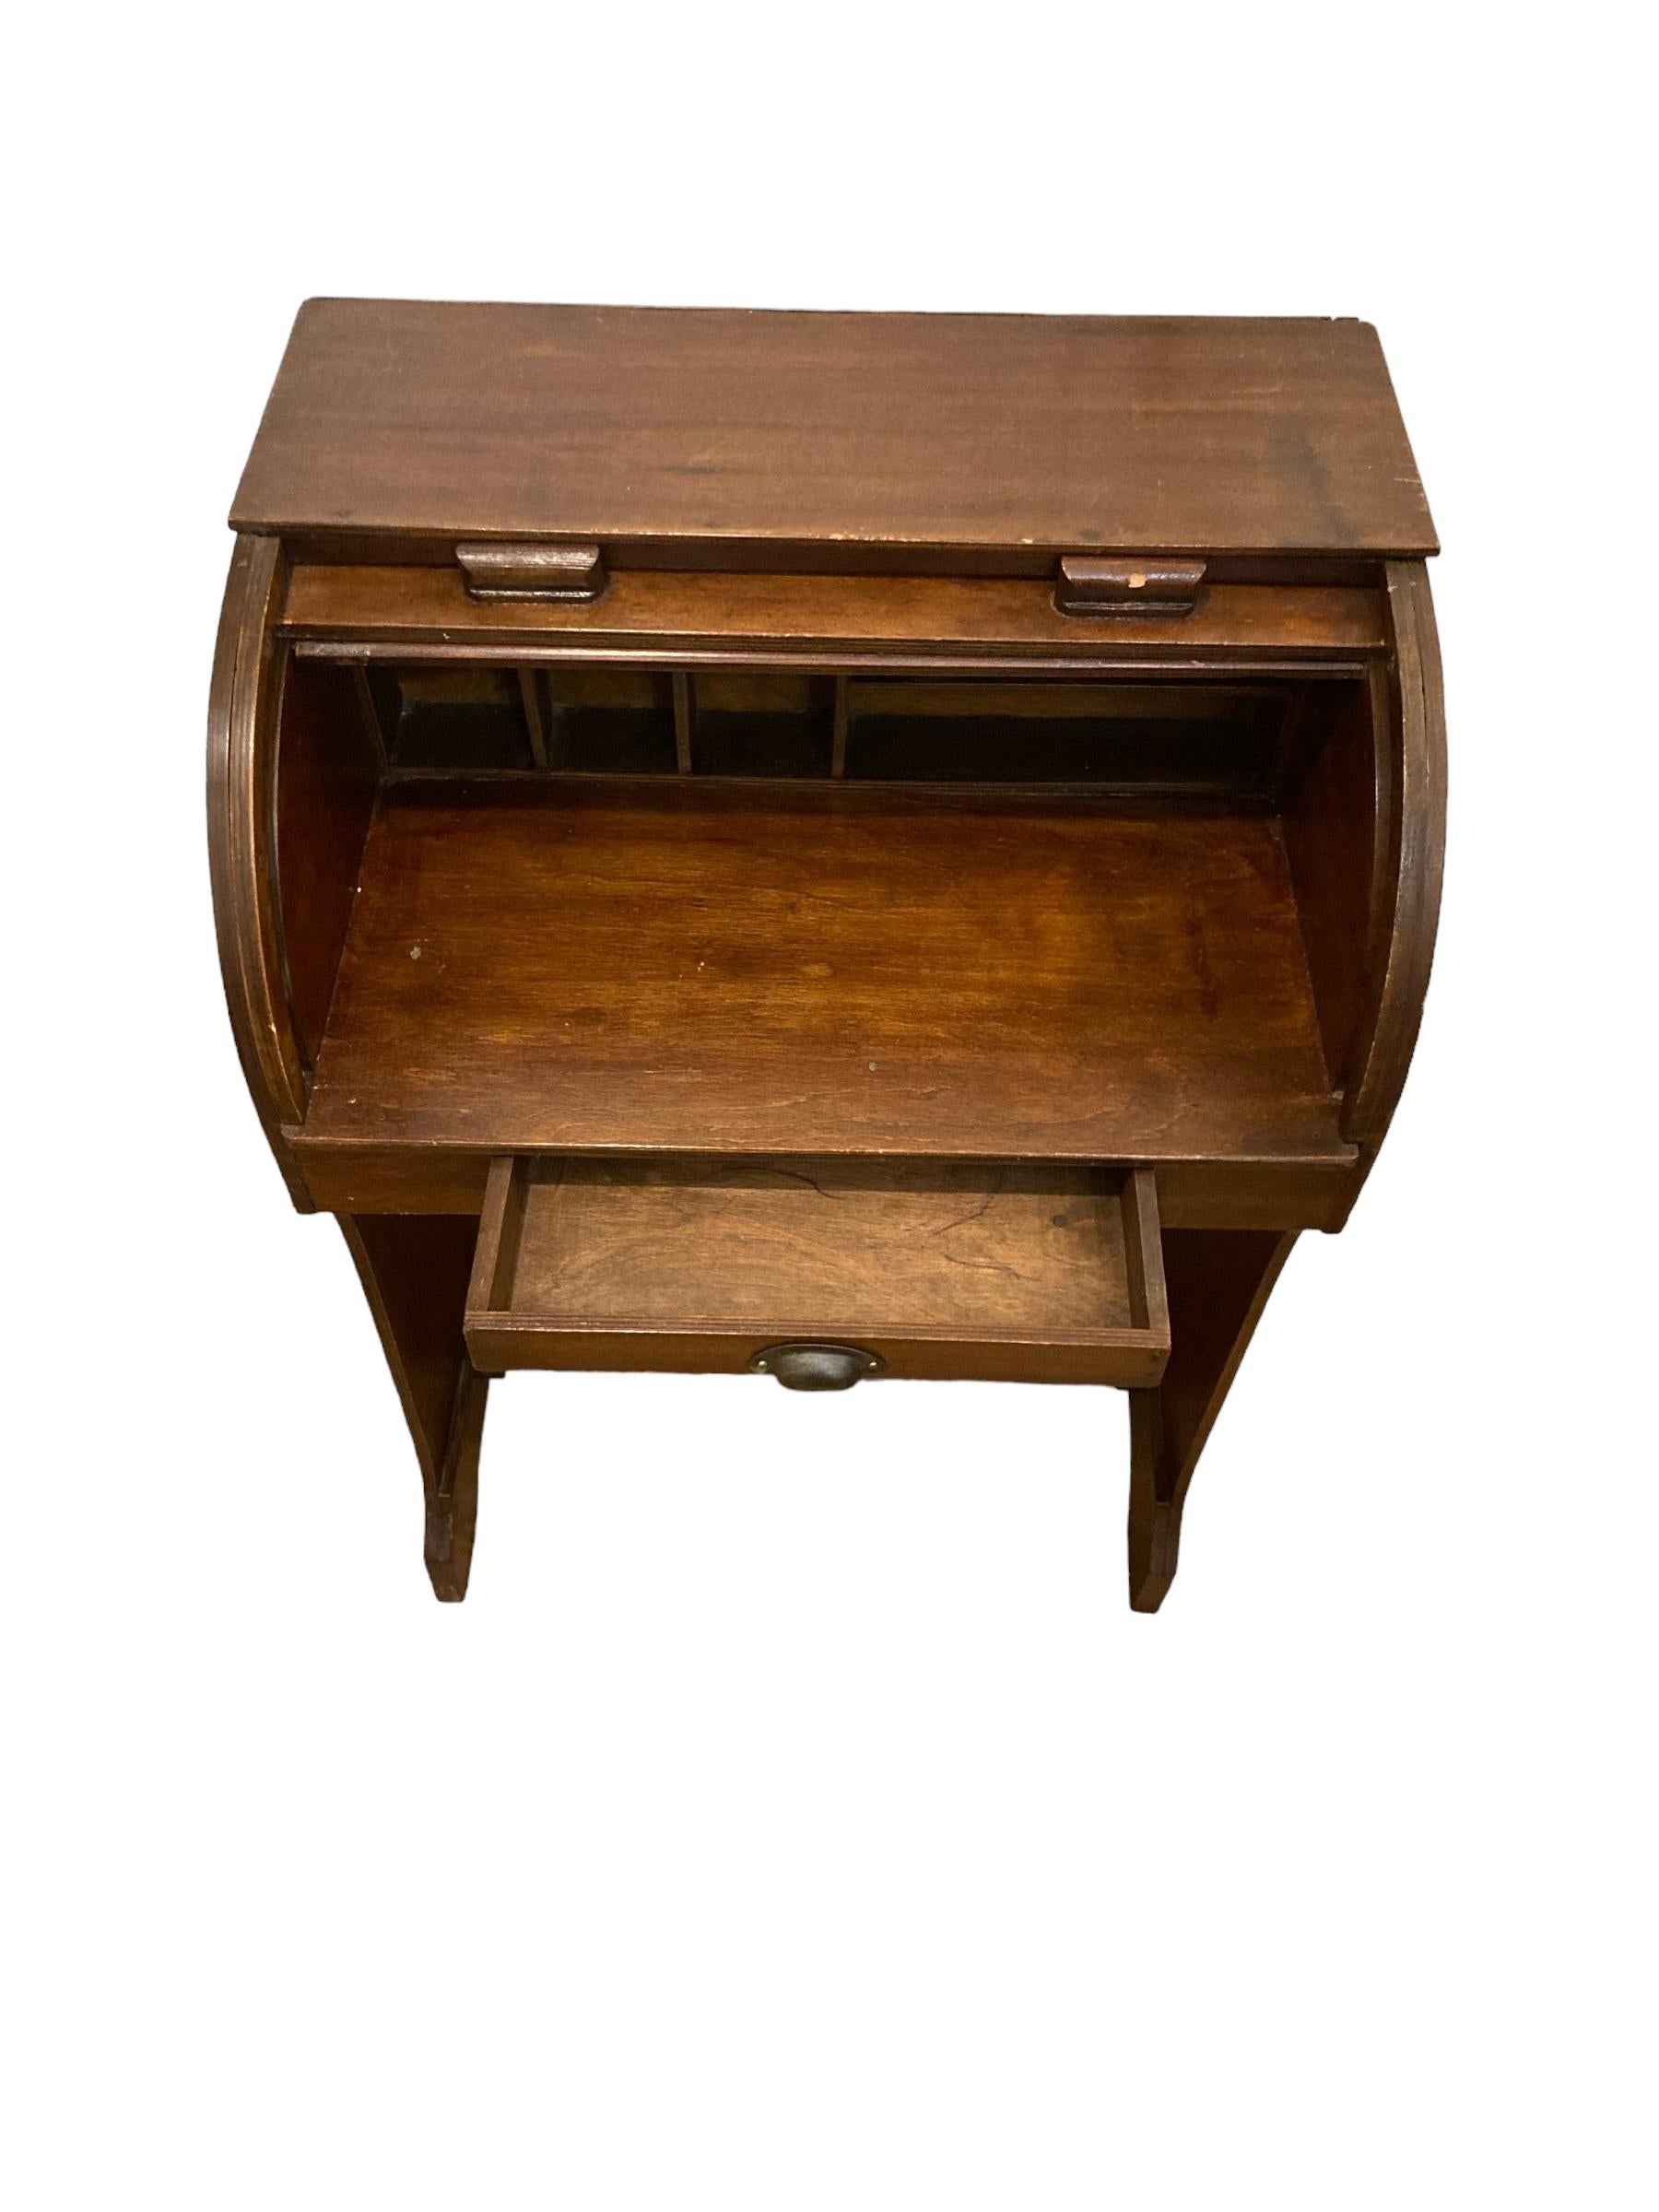 Hardwood Childs Vintage Roll Top Desk, Bureau For Sale